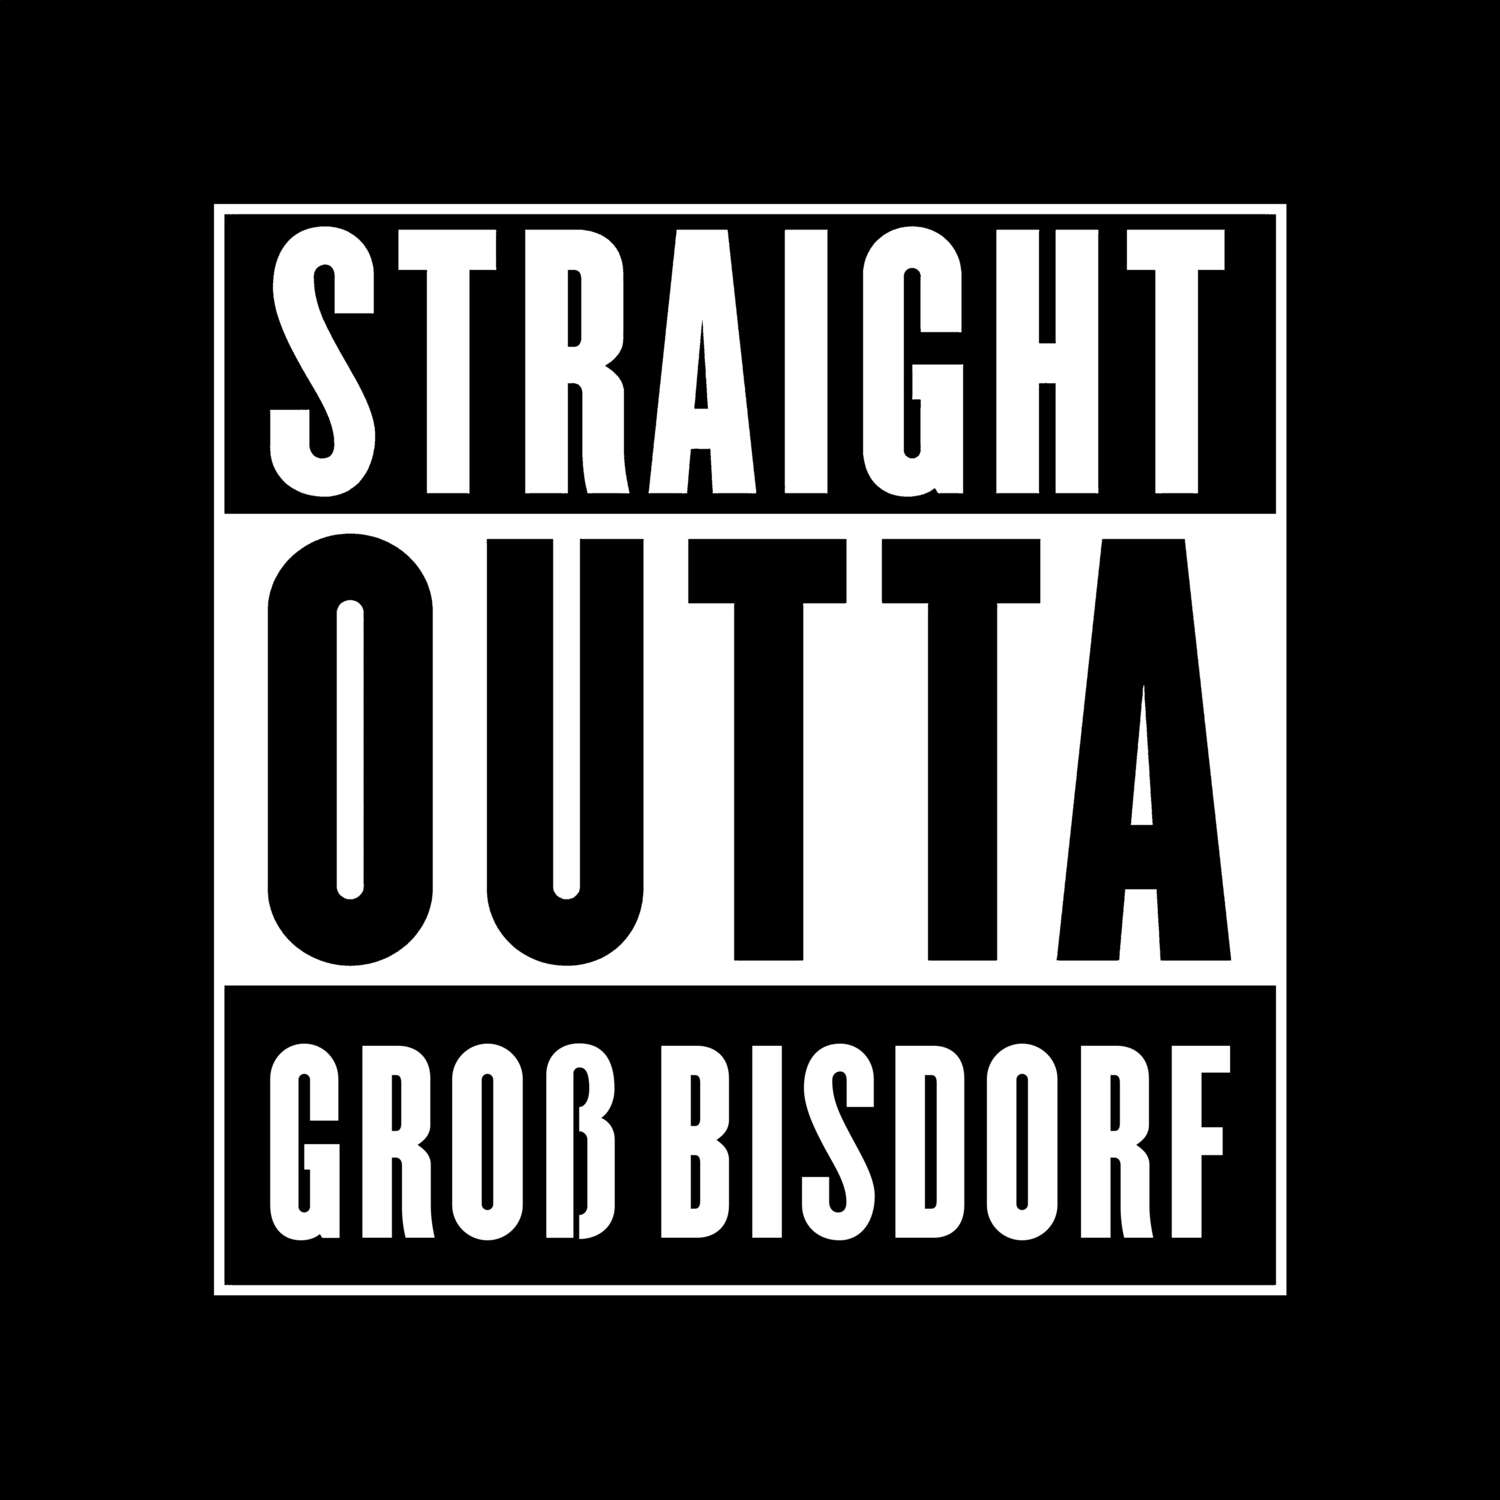 Groß Bisdorf T-Shirt »Straight Outta«